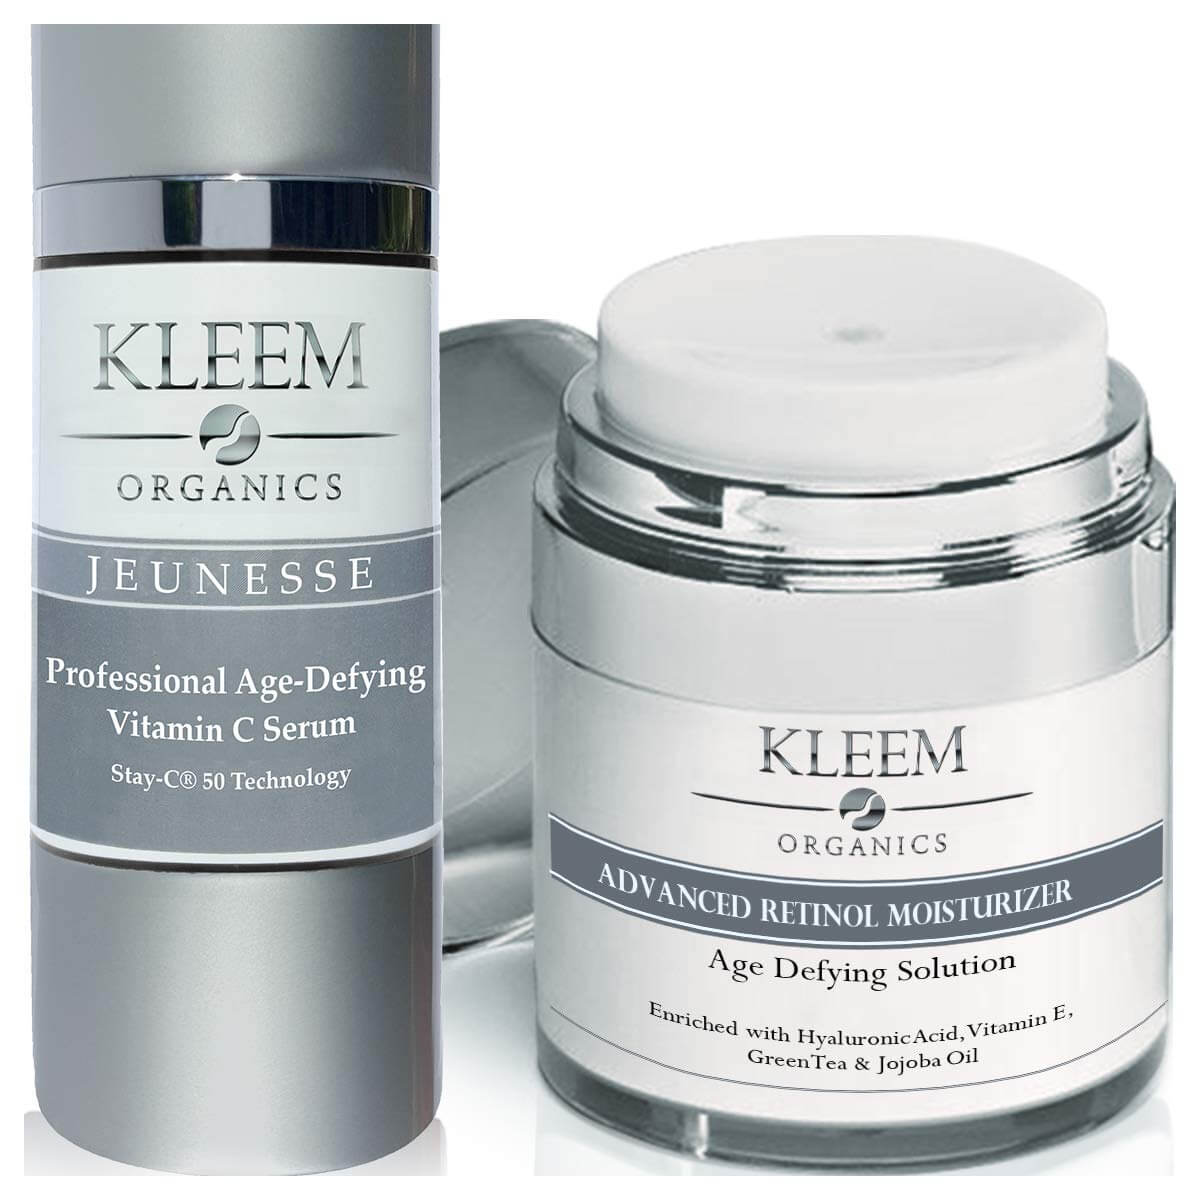 Kleem Organics Night Anti Wrinkle Facial Cream